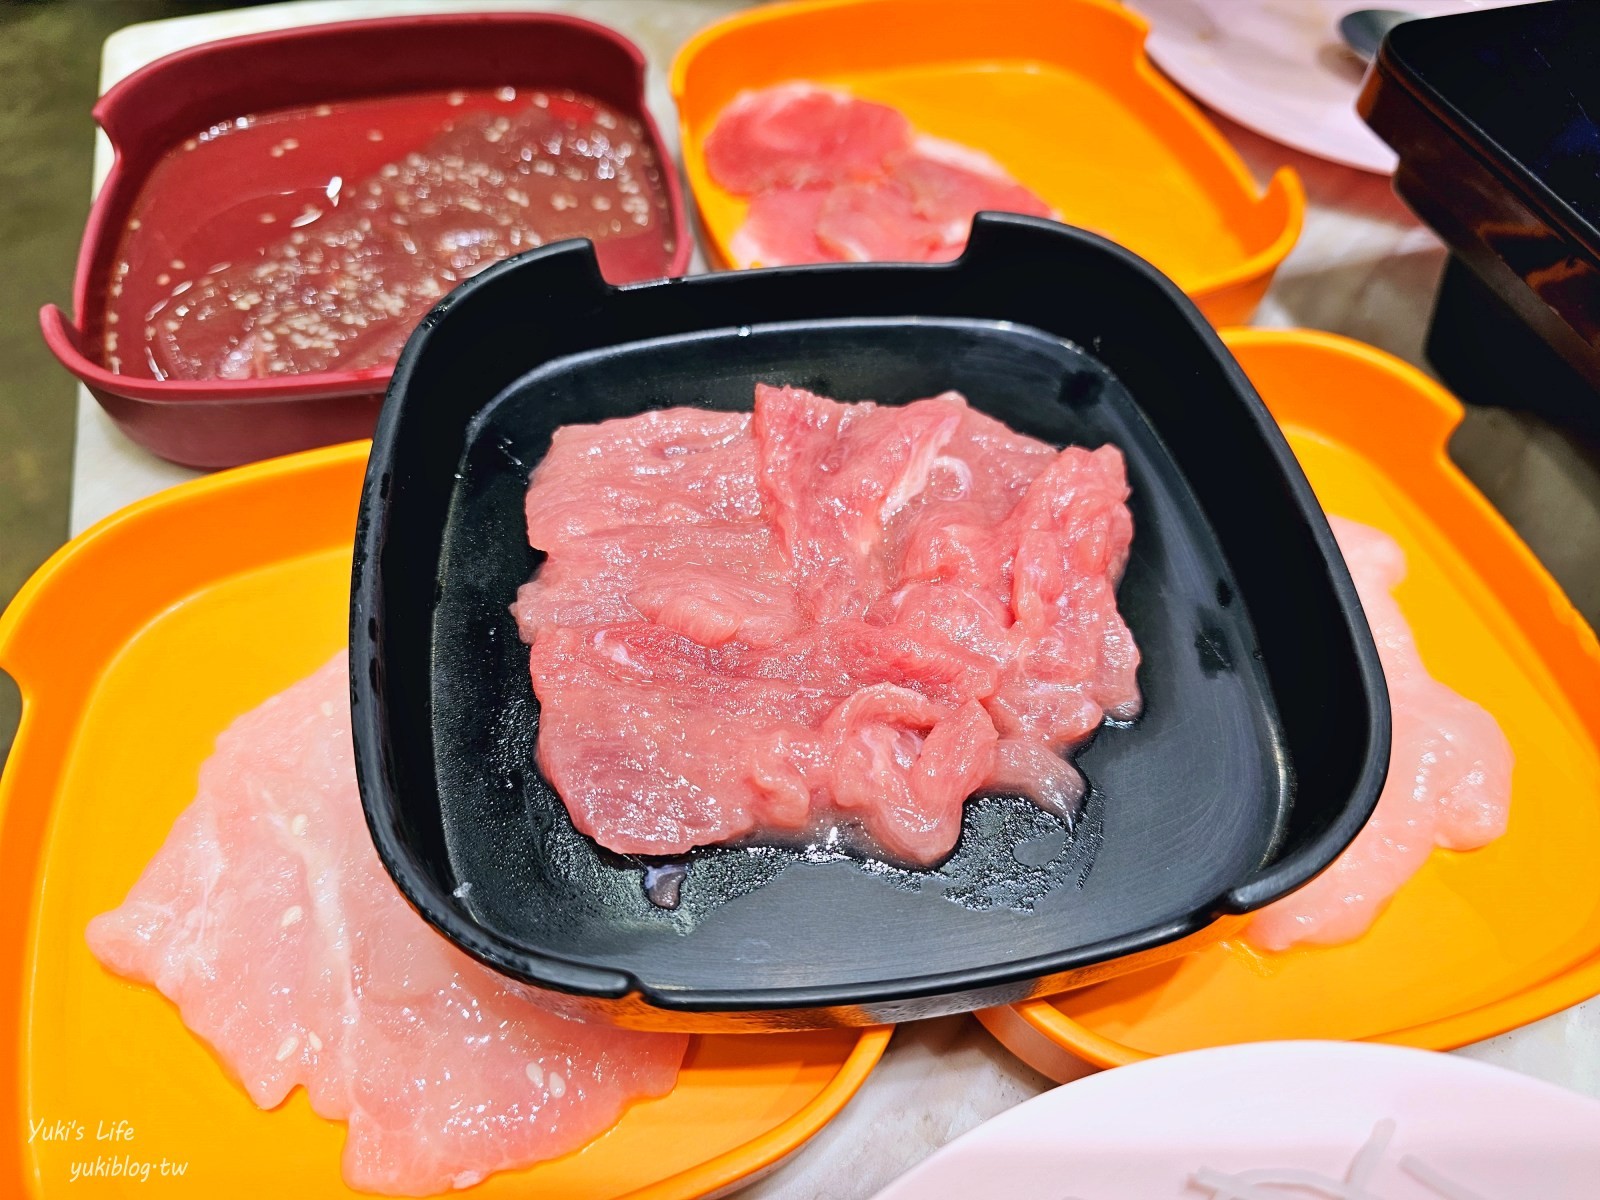 曼谷美食【Pho Mo Fai】超人氣平價火鍋，蔬菜和餛飩是必點，便宜美味 - yukiblog.tw